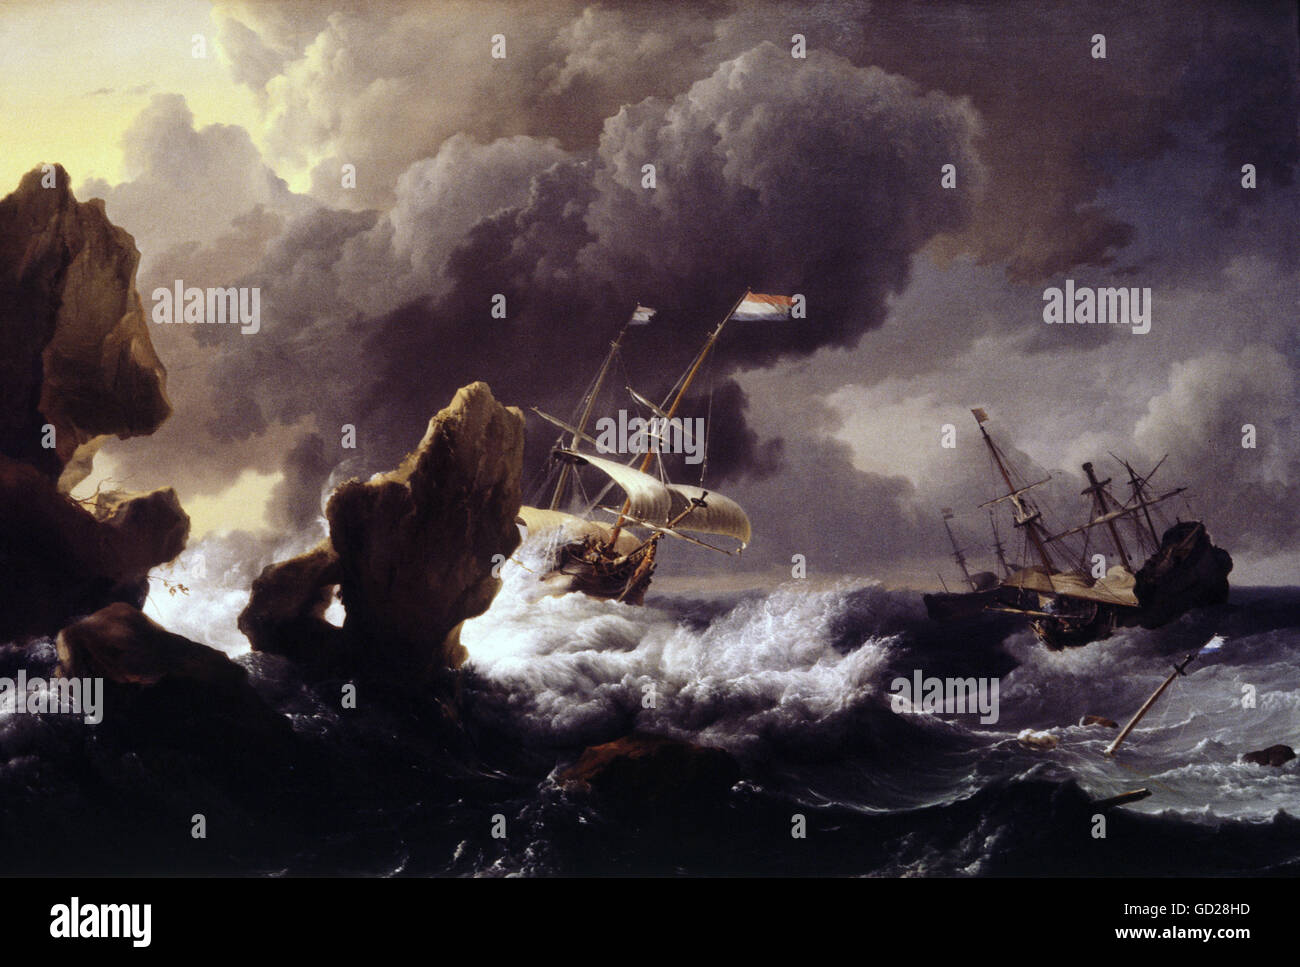 Bildende Kunst, Bakhuizen, Ludolf (1630 - 1708), Malerei, Schiffen, die in einem Sturm vor einer Klippe, Öl auf Leinwand, 1667, Nationalgalerie, Washington DC, Artist's Urheberrecht nicht geklärt zu werden. Stockfoto